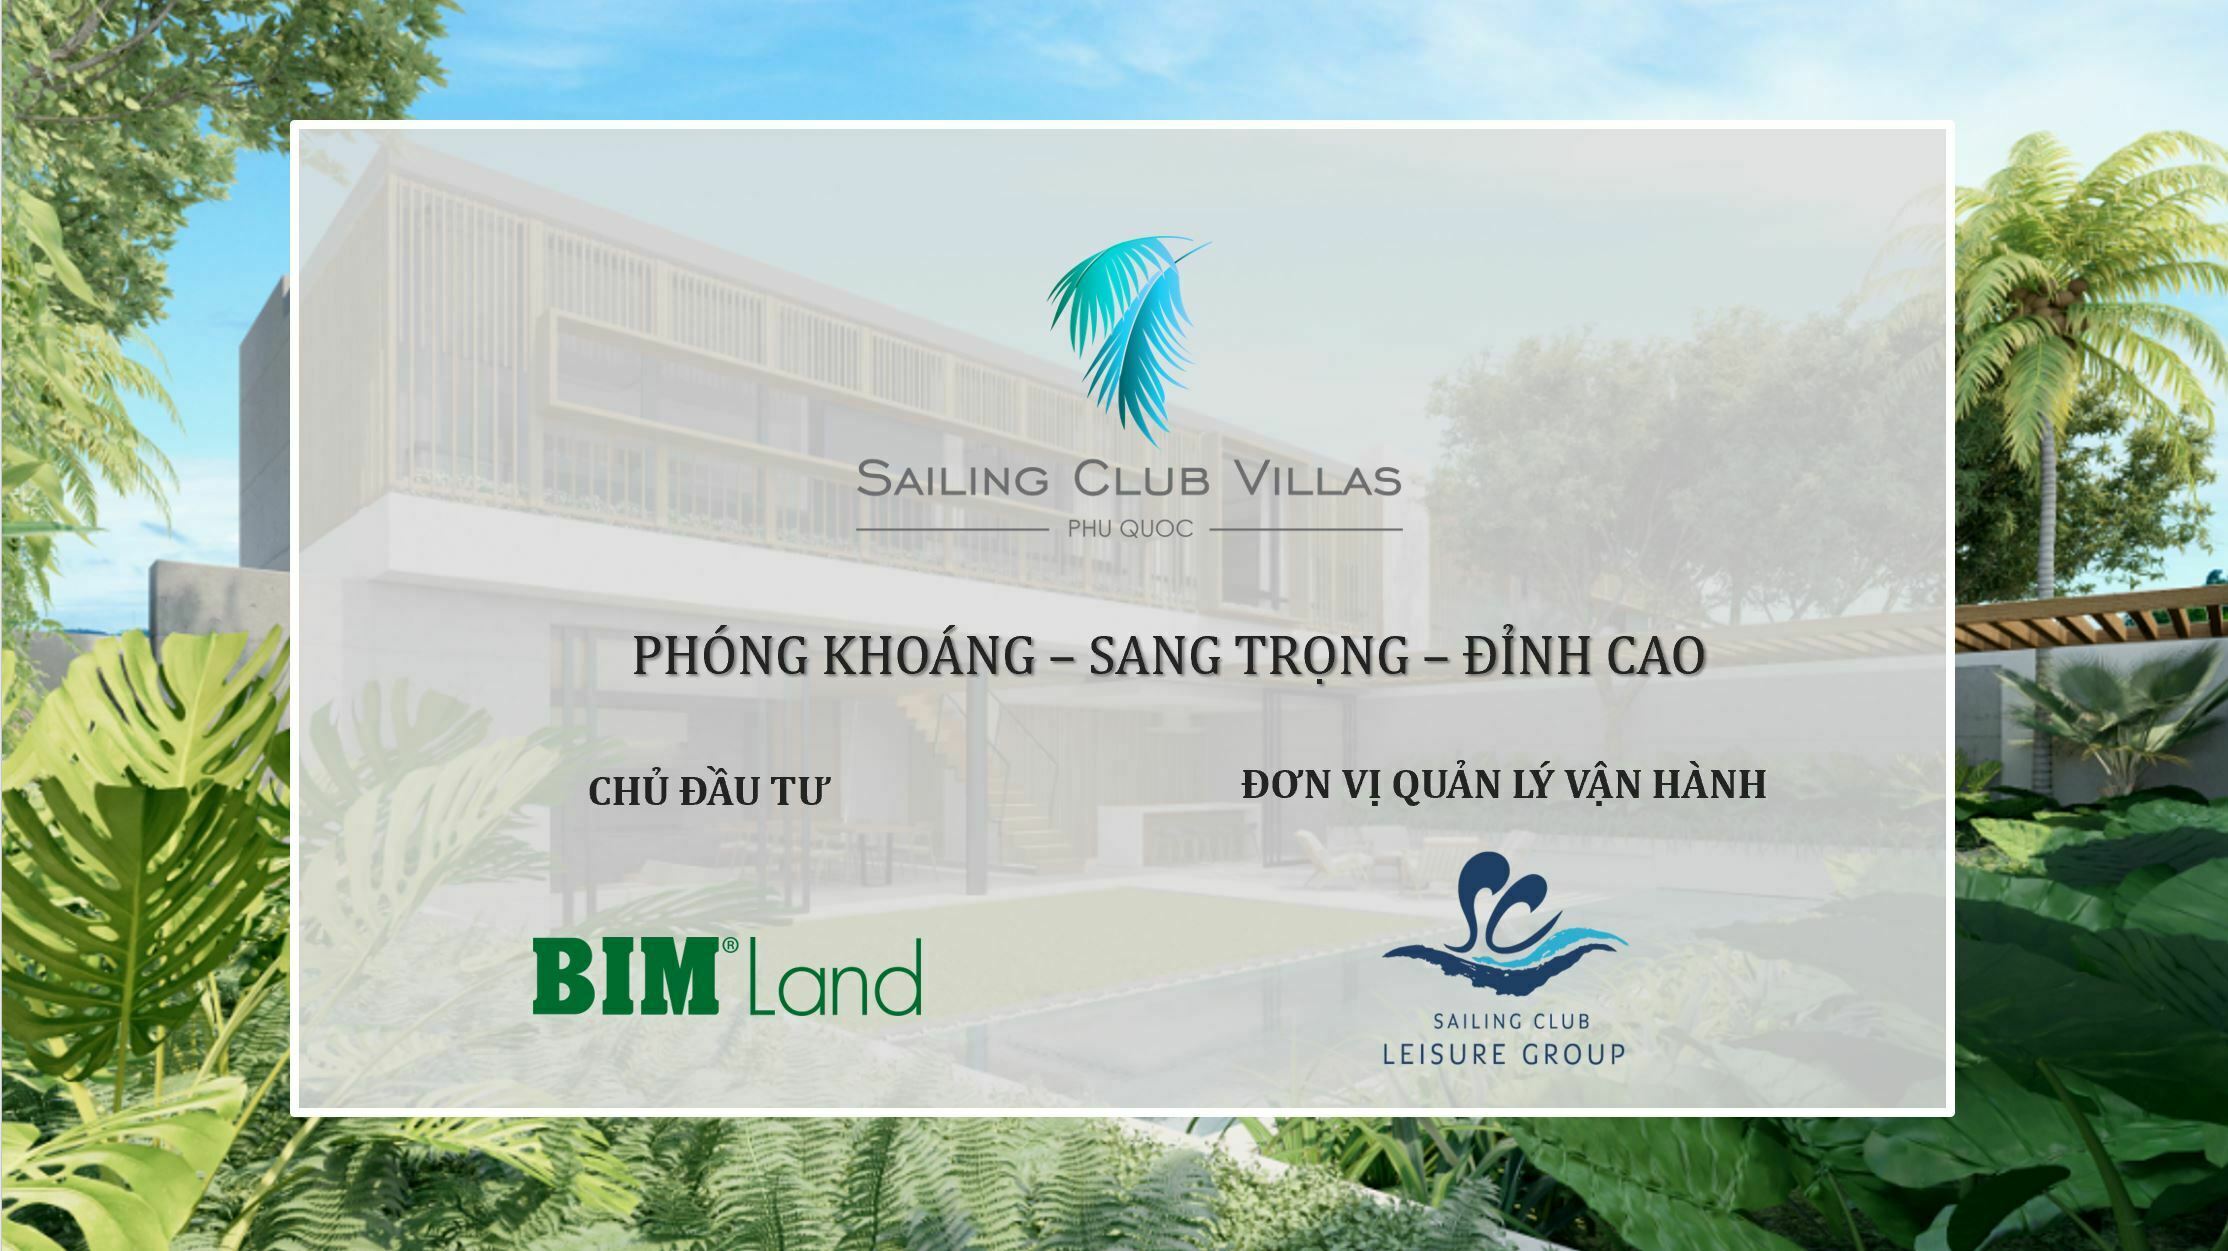 Dự án Sailing Club Villas Phu Quoc được BIM Land định hình theo phong cách "Phóng khoáng - Sang trọng đỉnh cao"